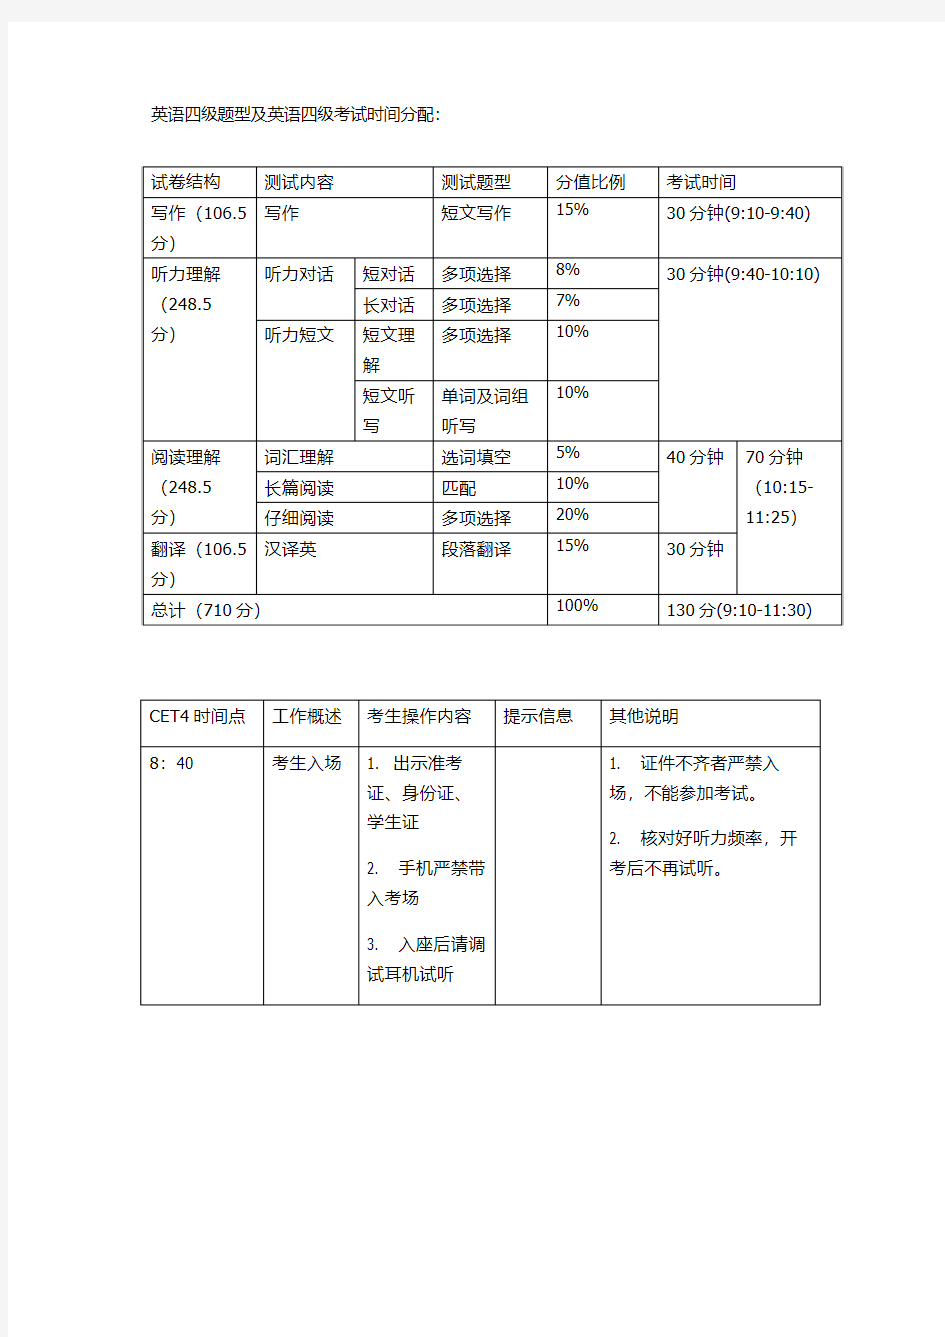 英语四级题型及英语四级考试时间分配